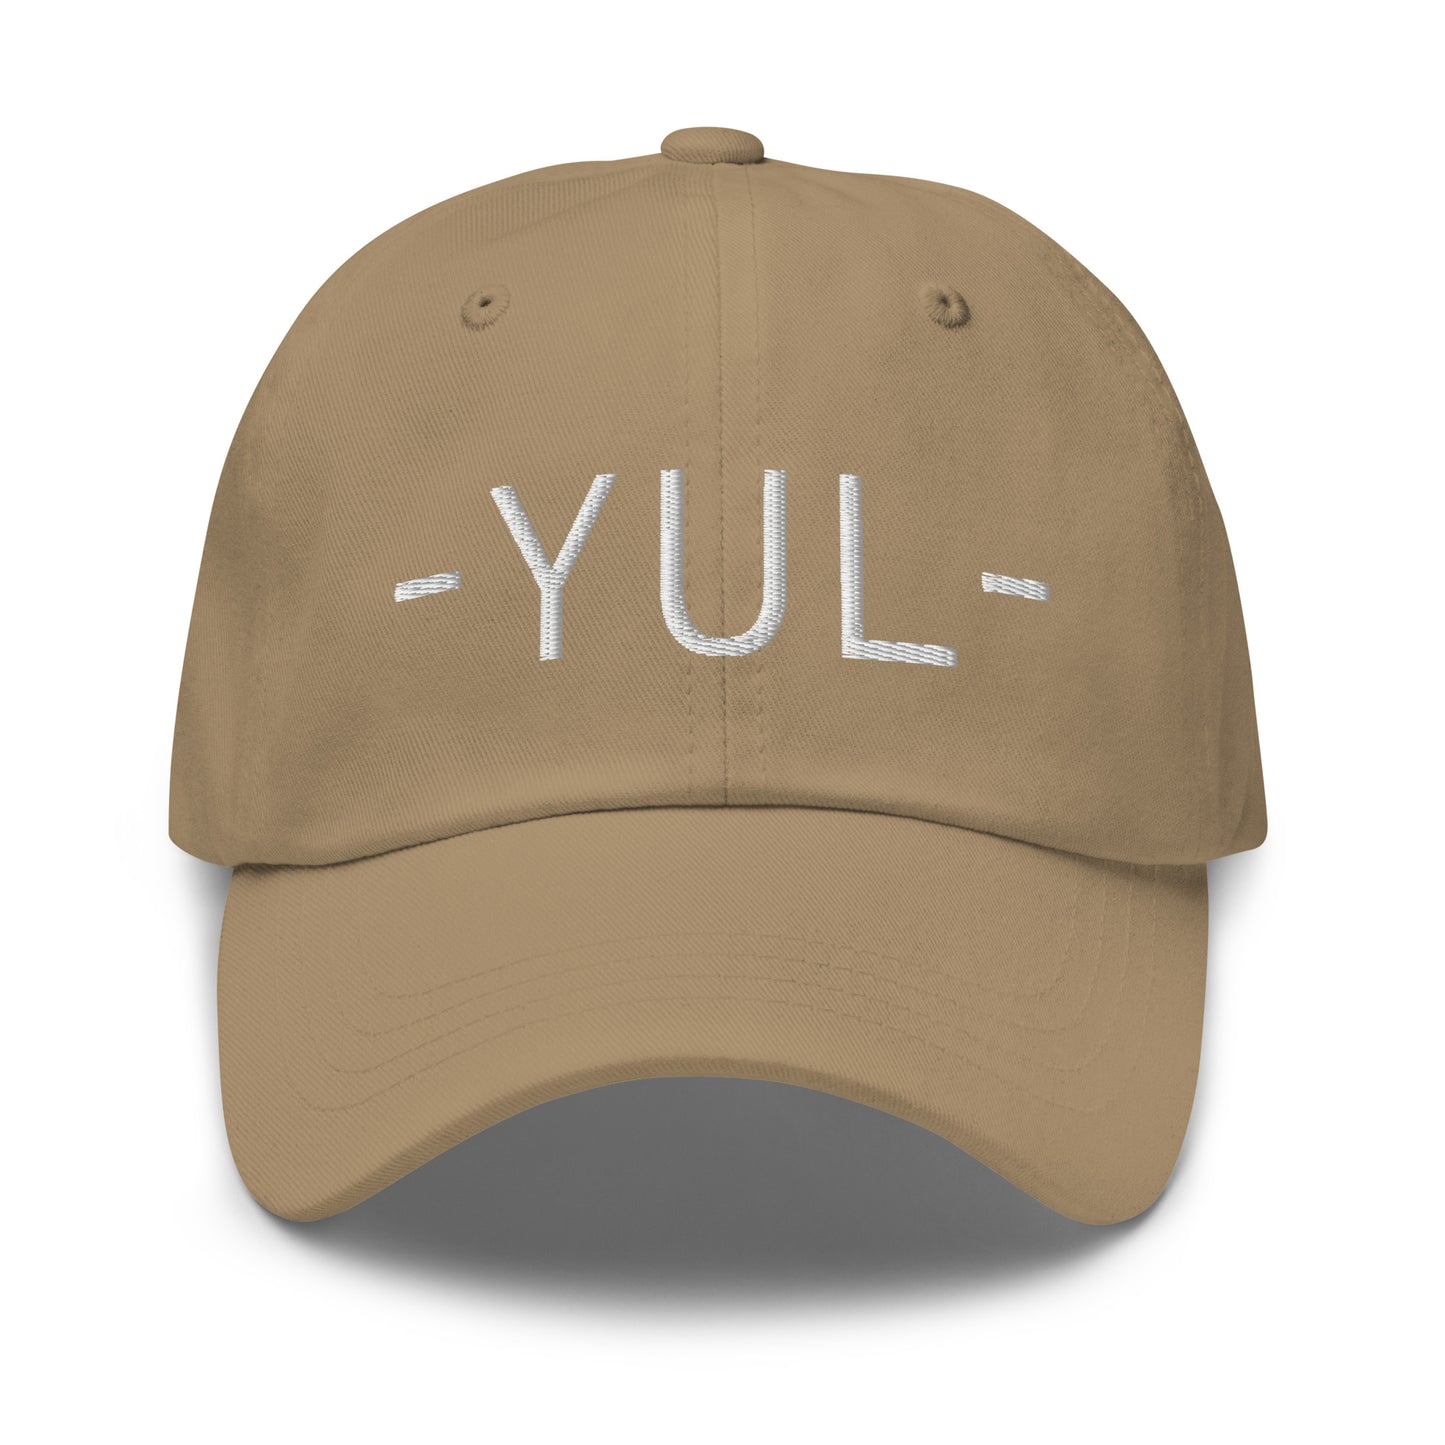 Souvenir Baseball Cap - White • YUL Montreal • YHM Designs - Image 21